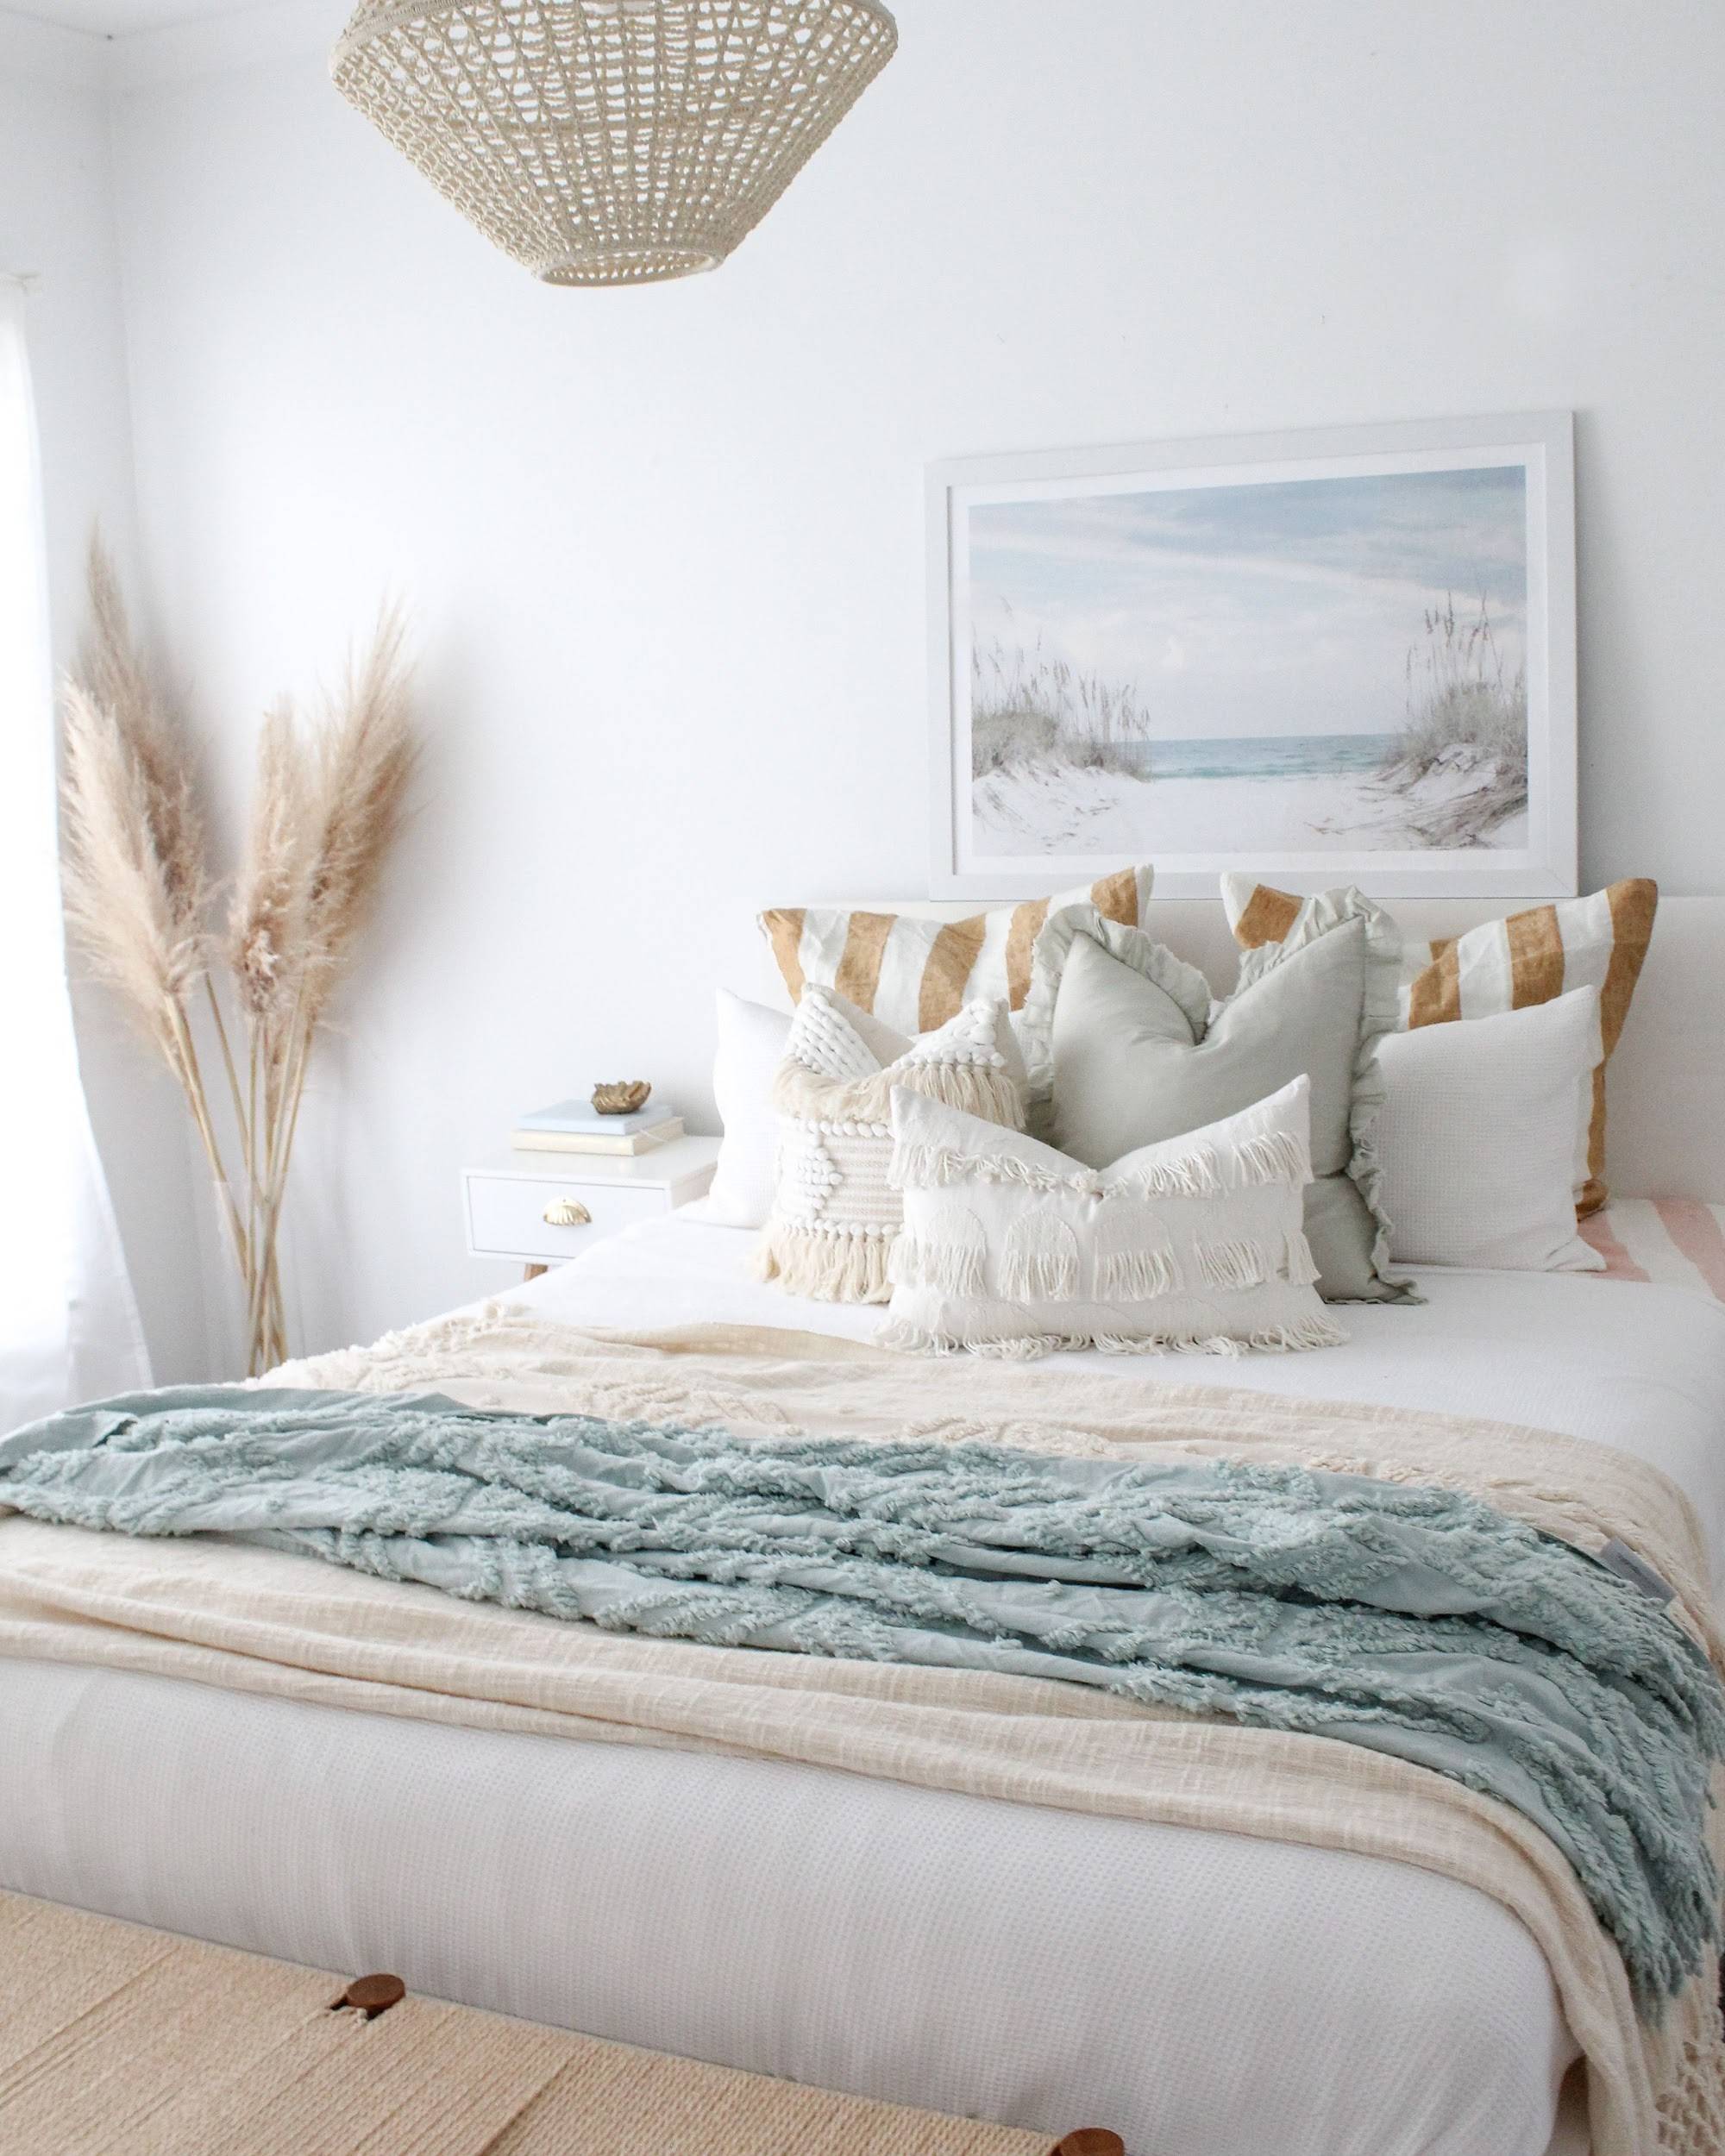 Ide kamar tidur terinspirasi pantai untuk rumah Anda